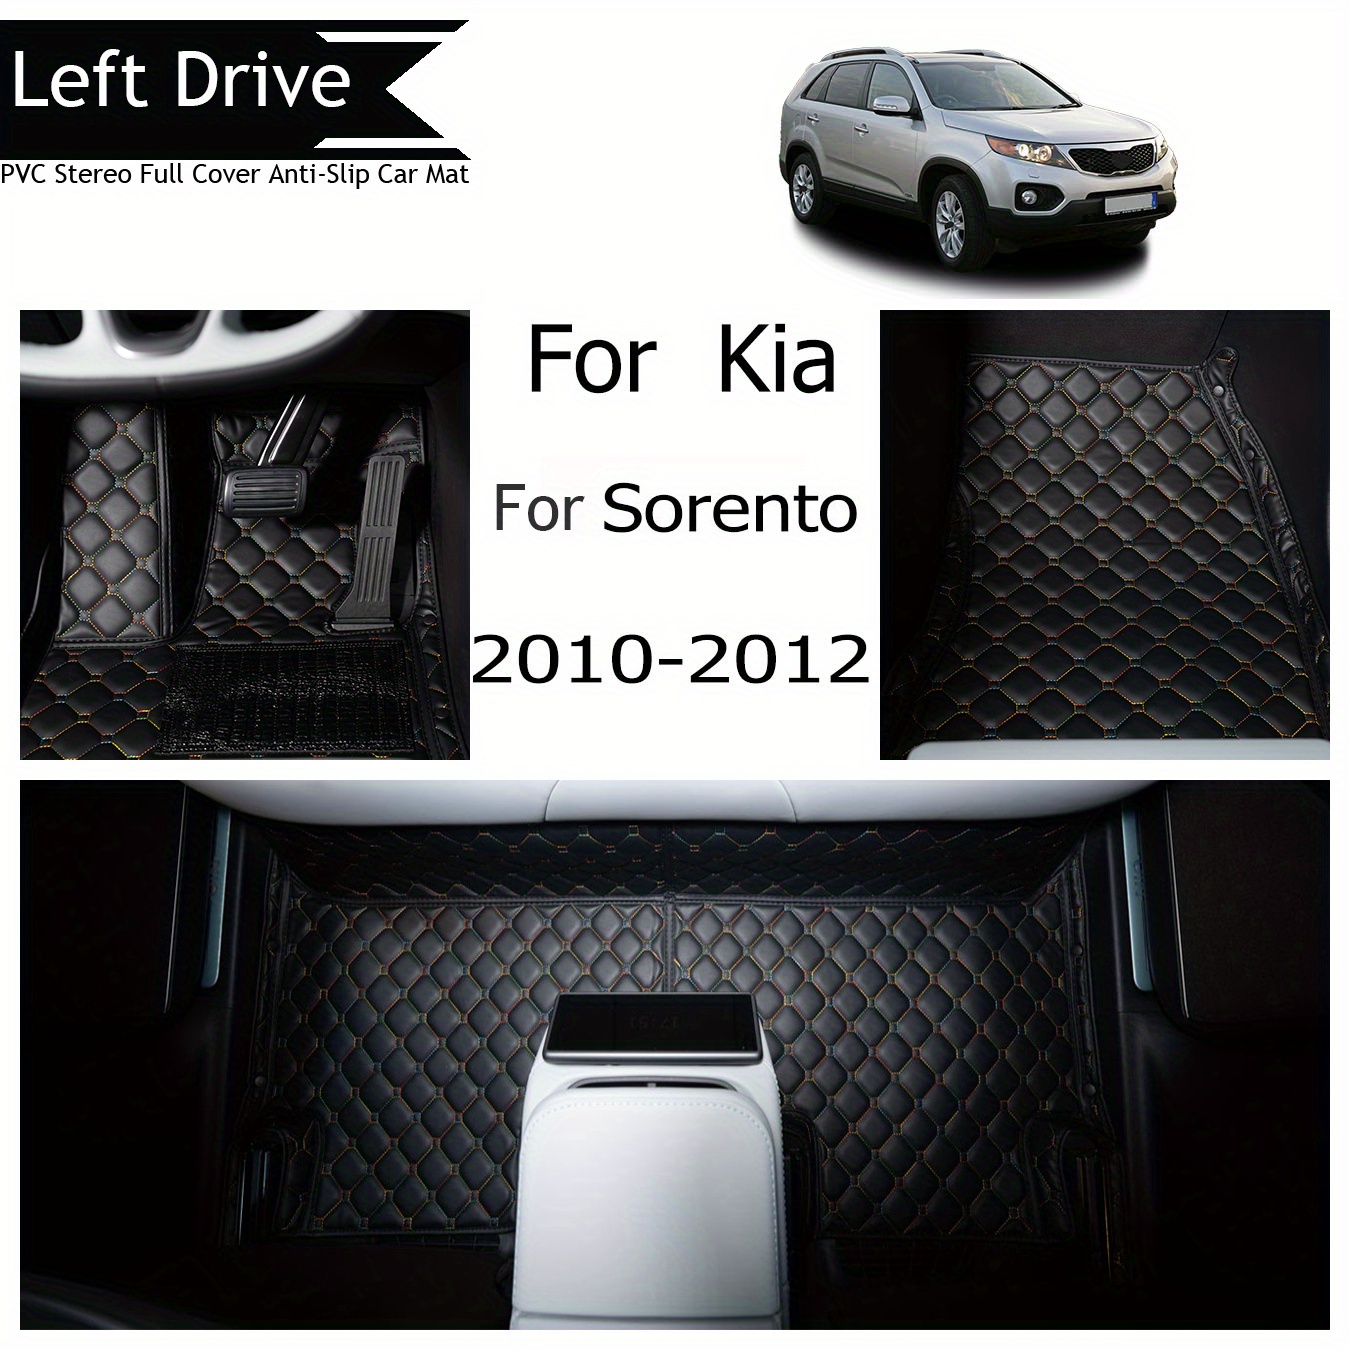 

Tegart [lhd]for Kia For Sorento 2010-2012 3 Layer Pvc Stereo Full Cover Anti-slip Car Mat